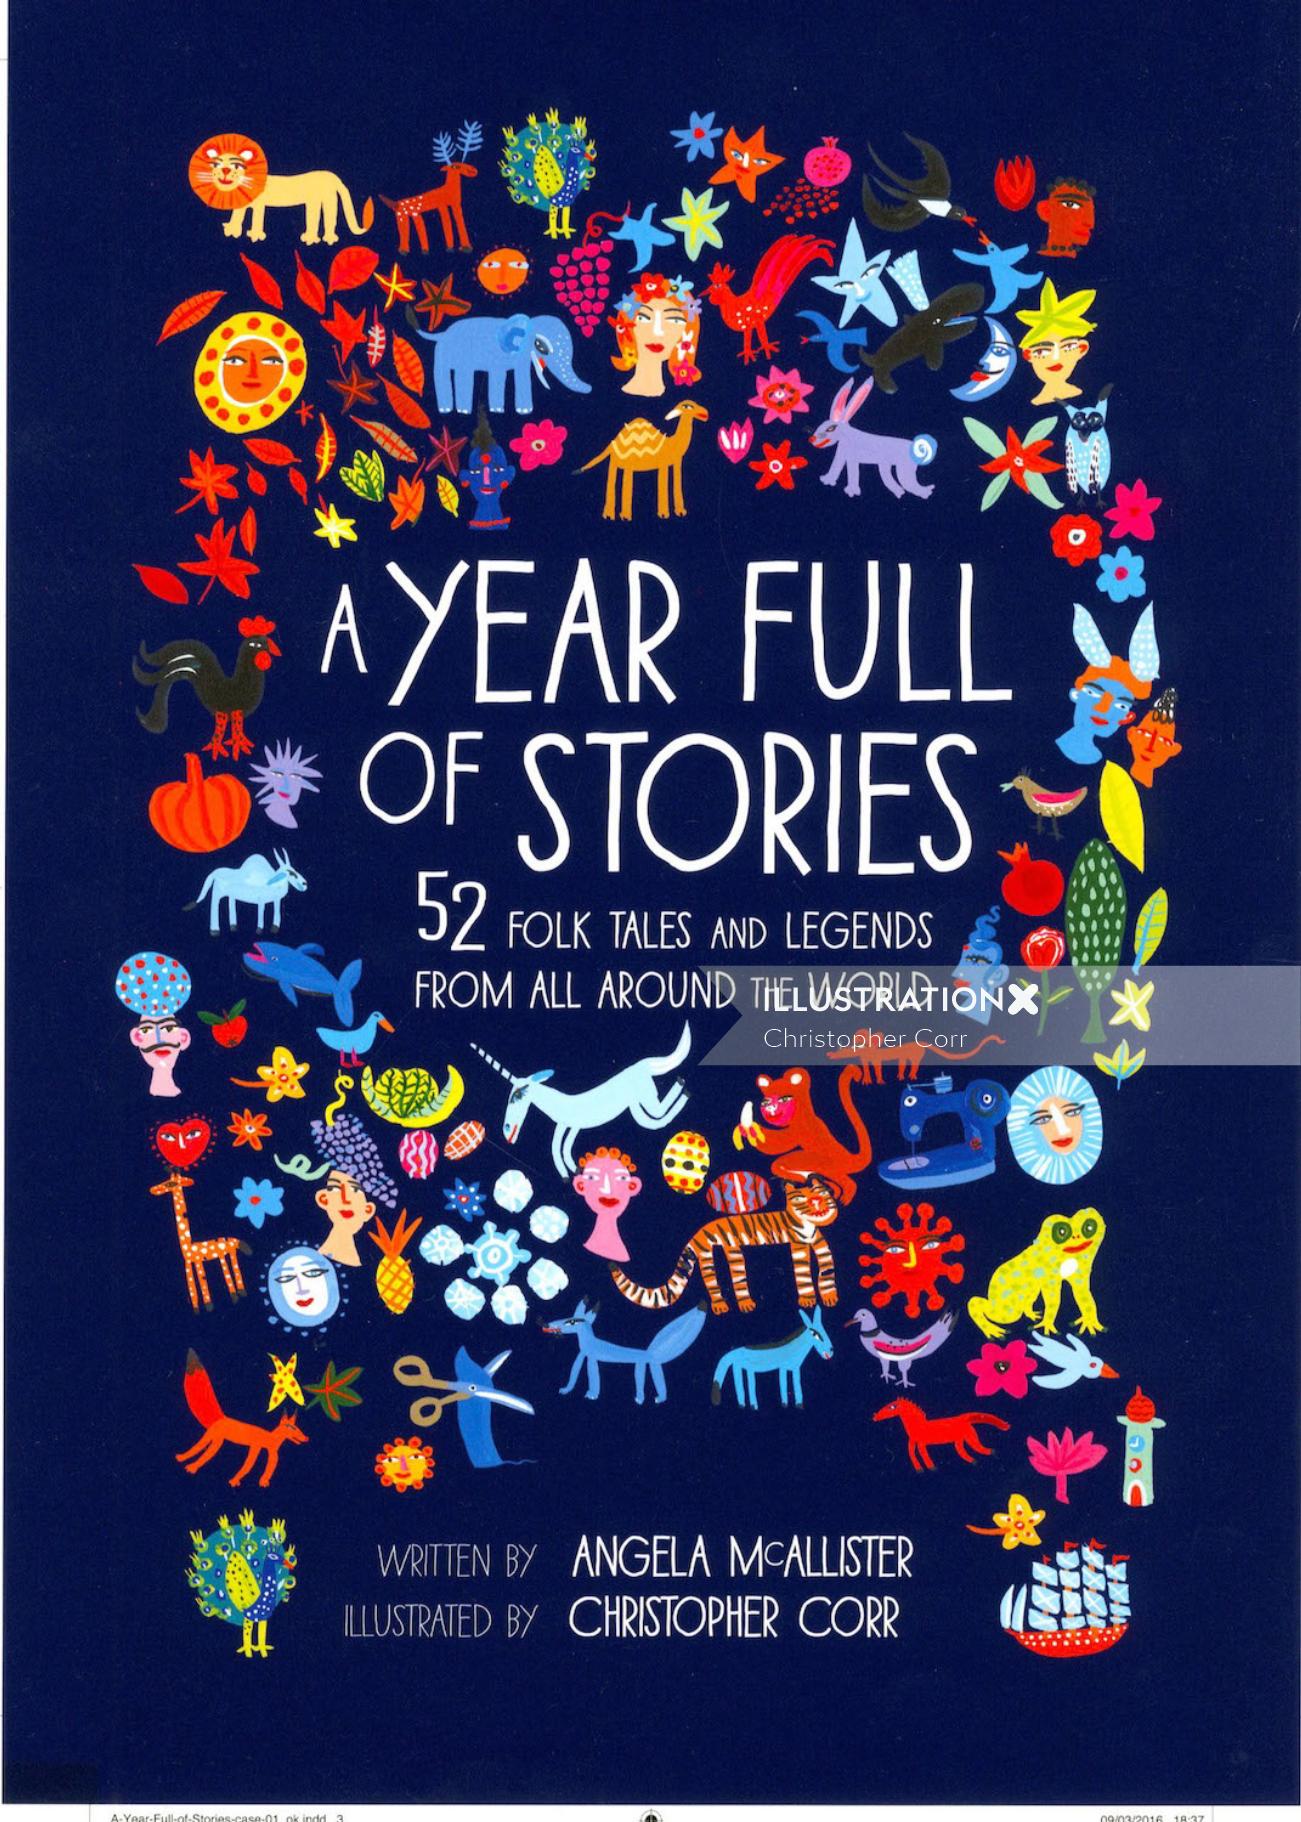 Letras Um ano cheio de histórias